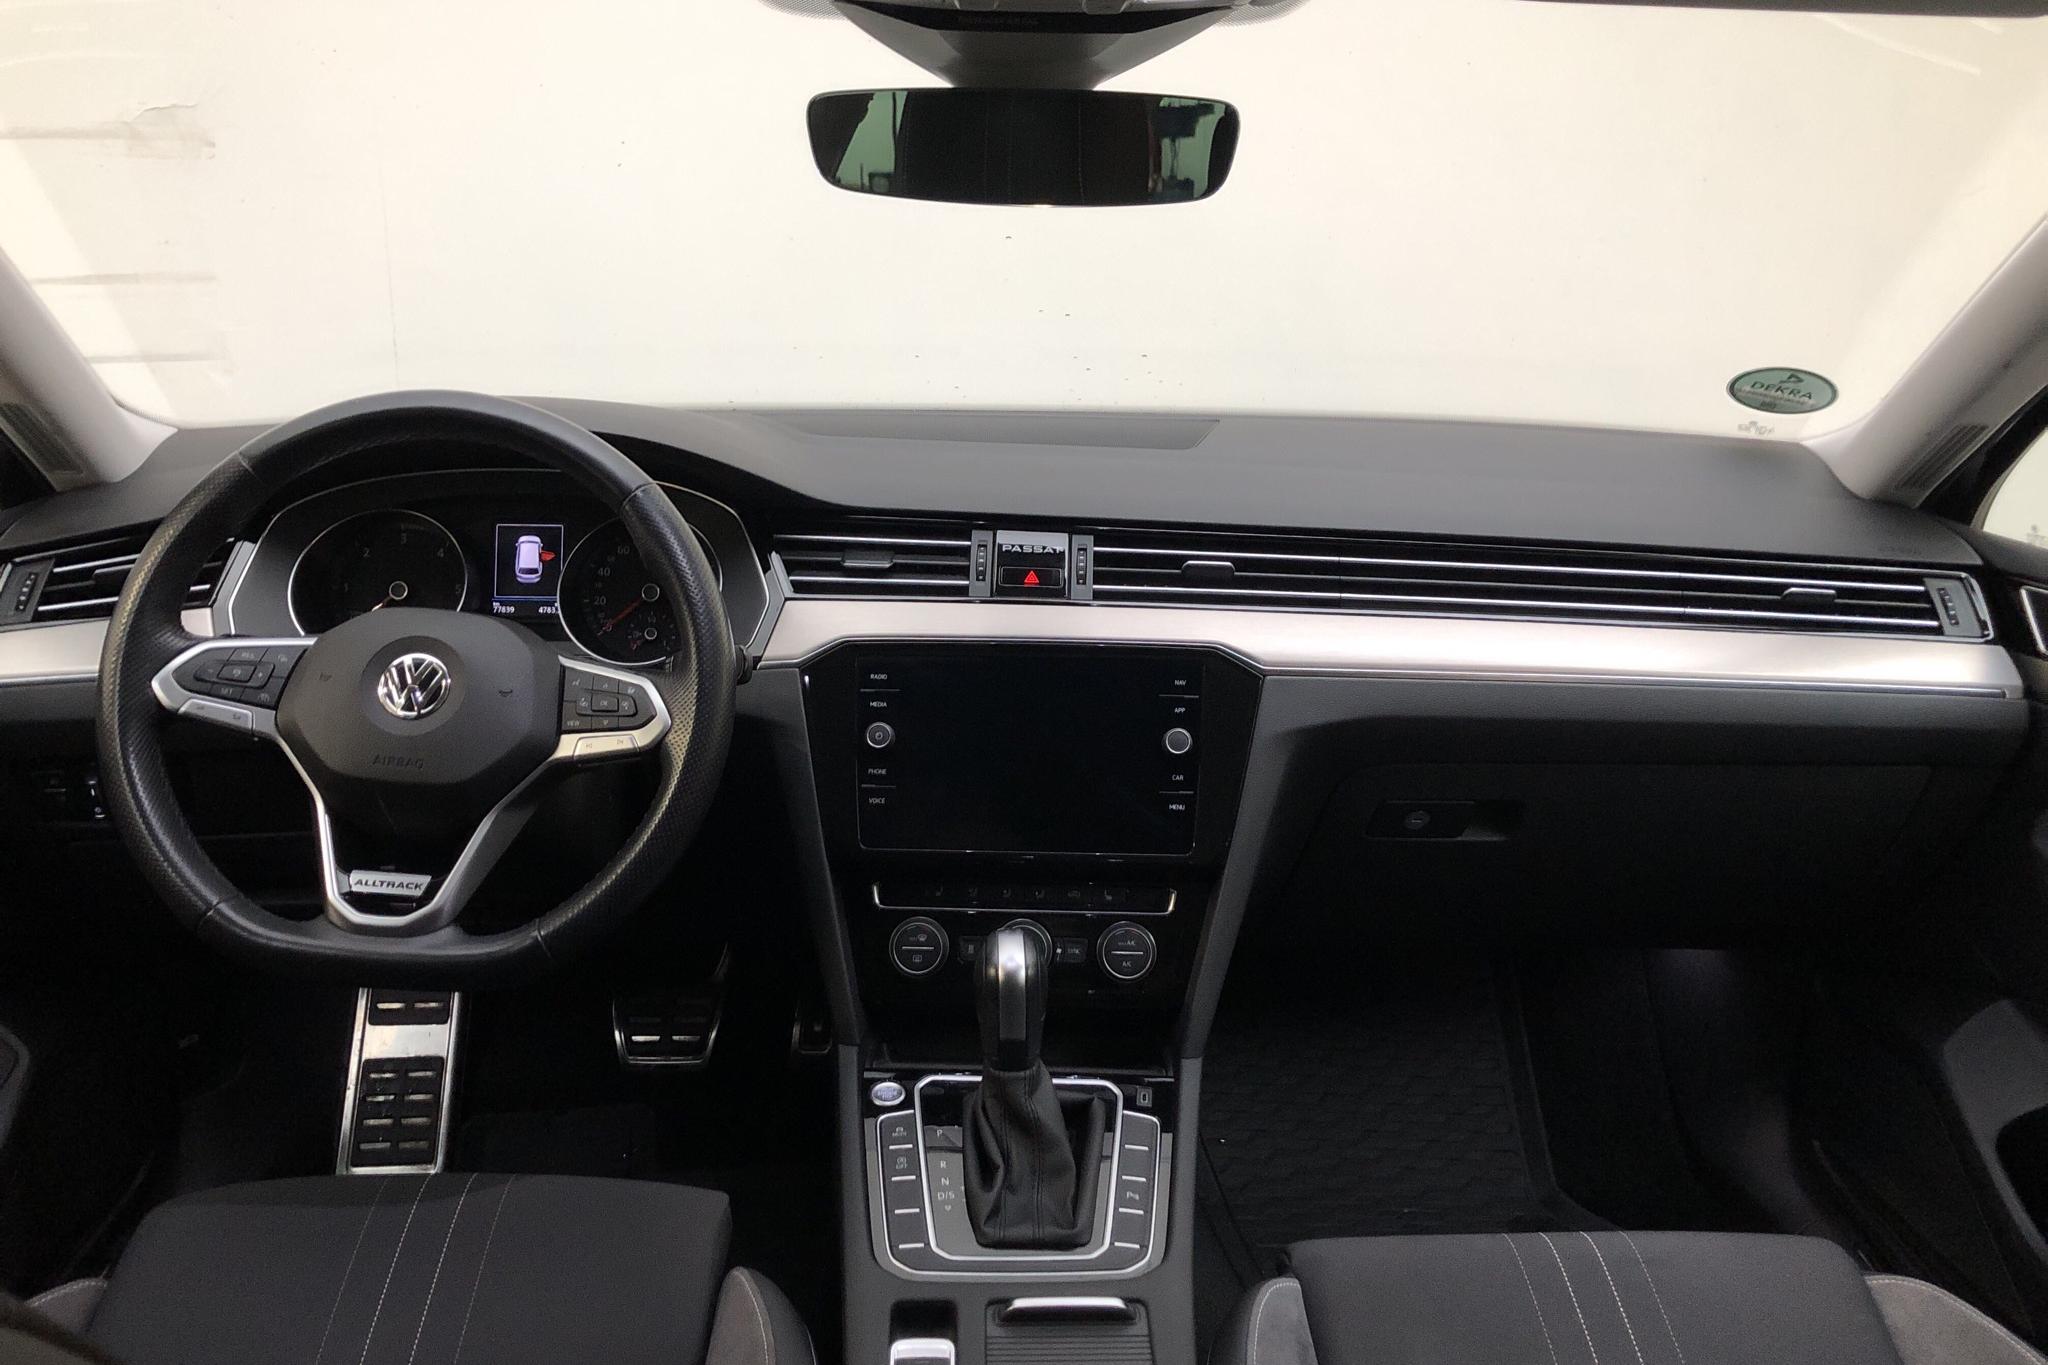 VW Passat 2.0 TDI Sportscombi 4MOTION (190hk) - 7 783 mil - Automat - blå - 2020